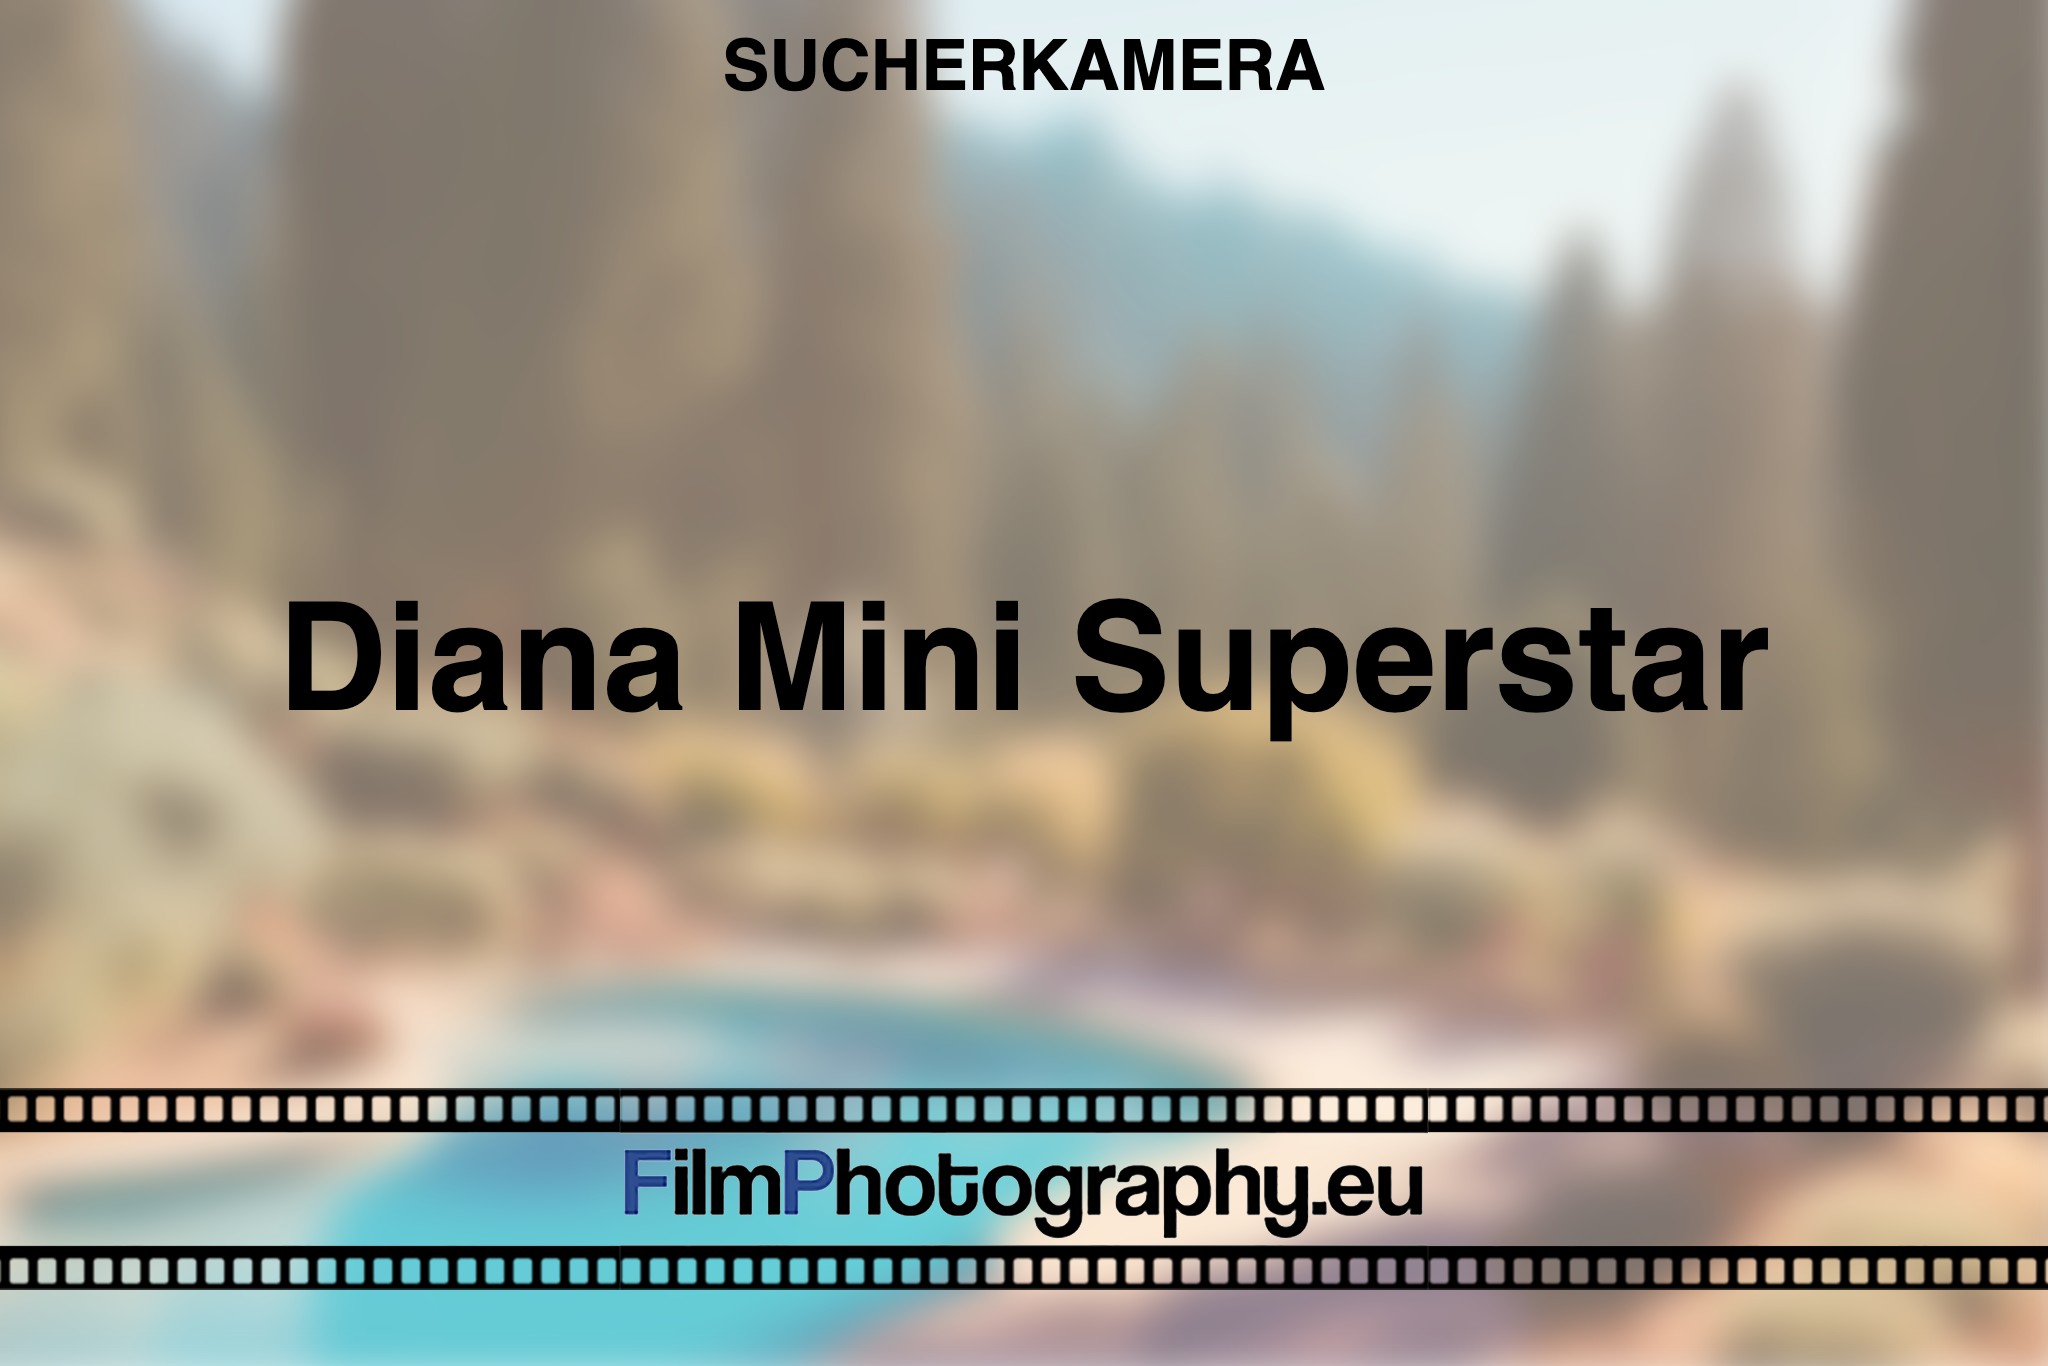 diana-mini-superstar-sucherkamera-bnv